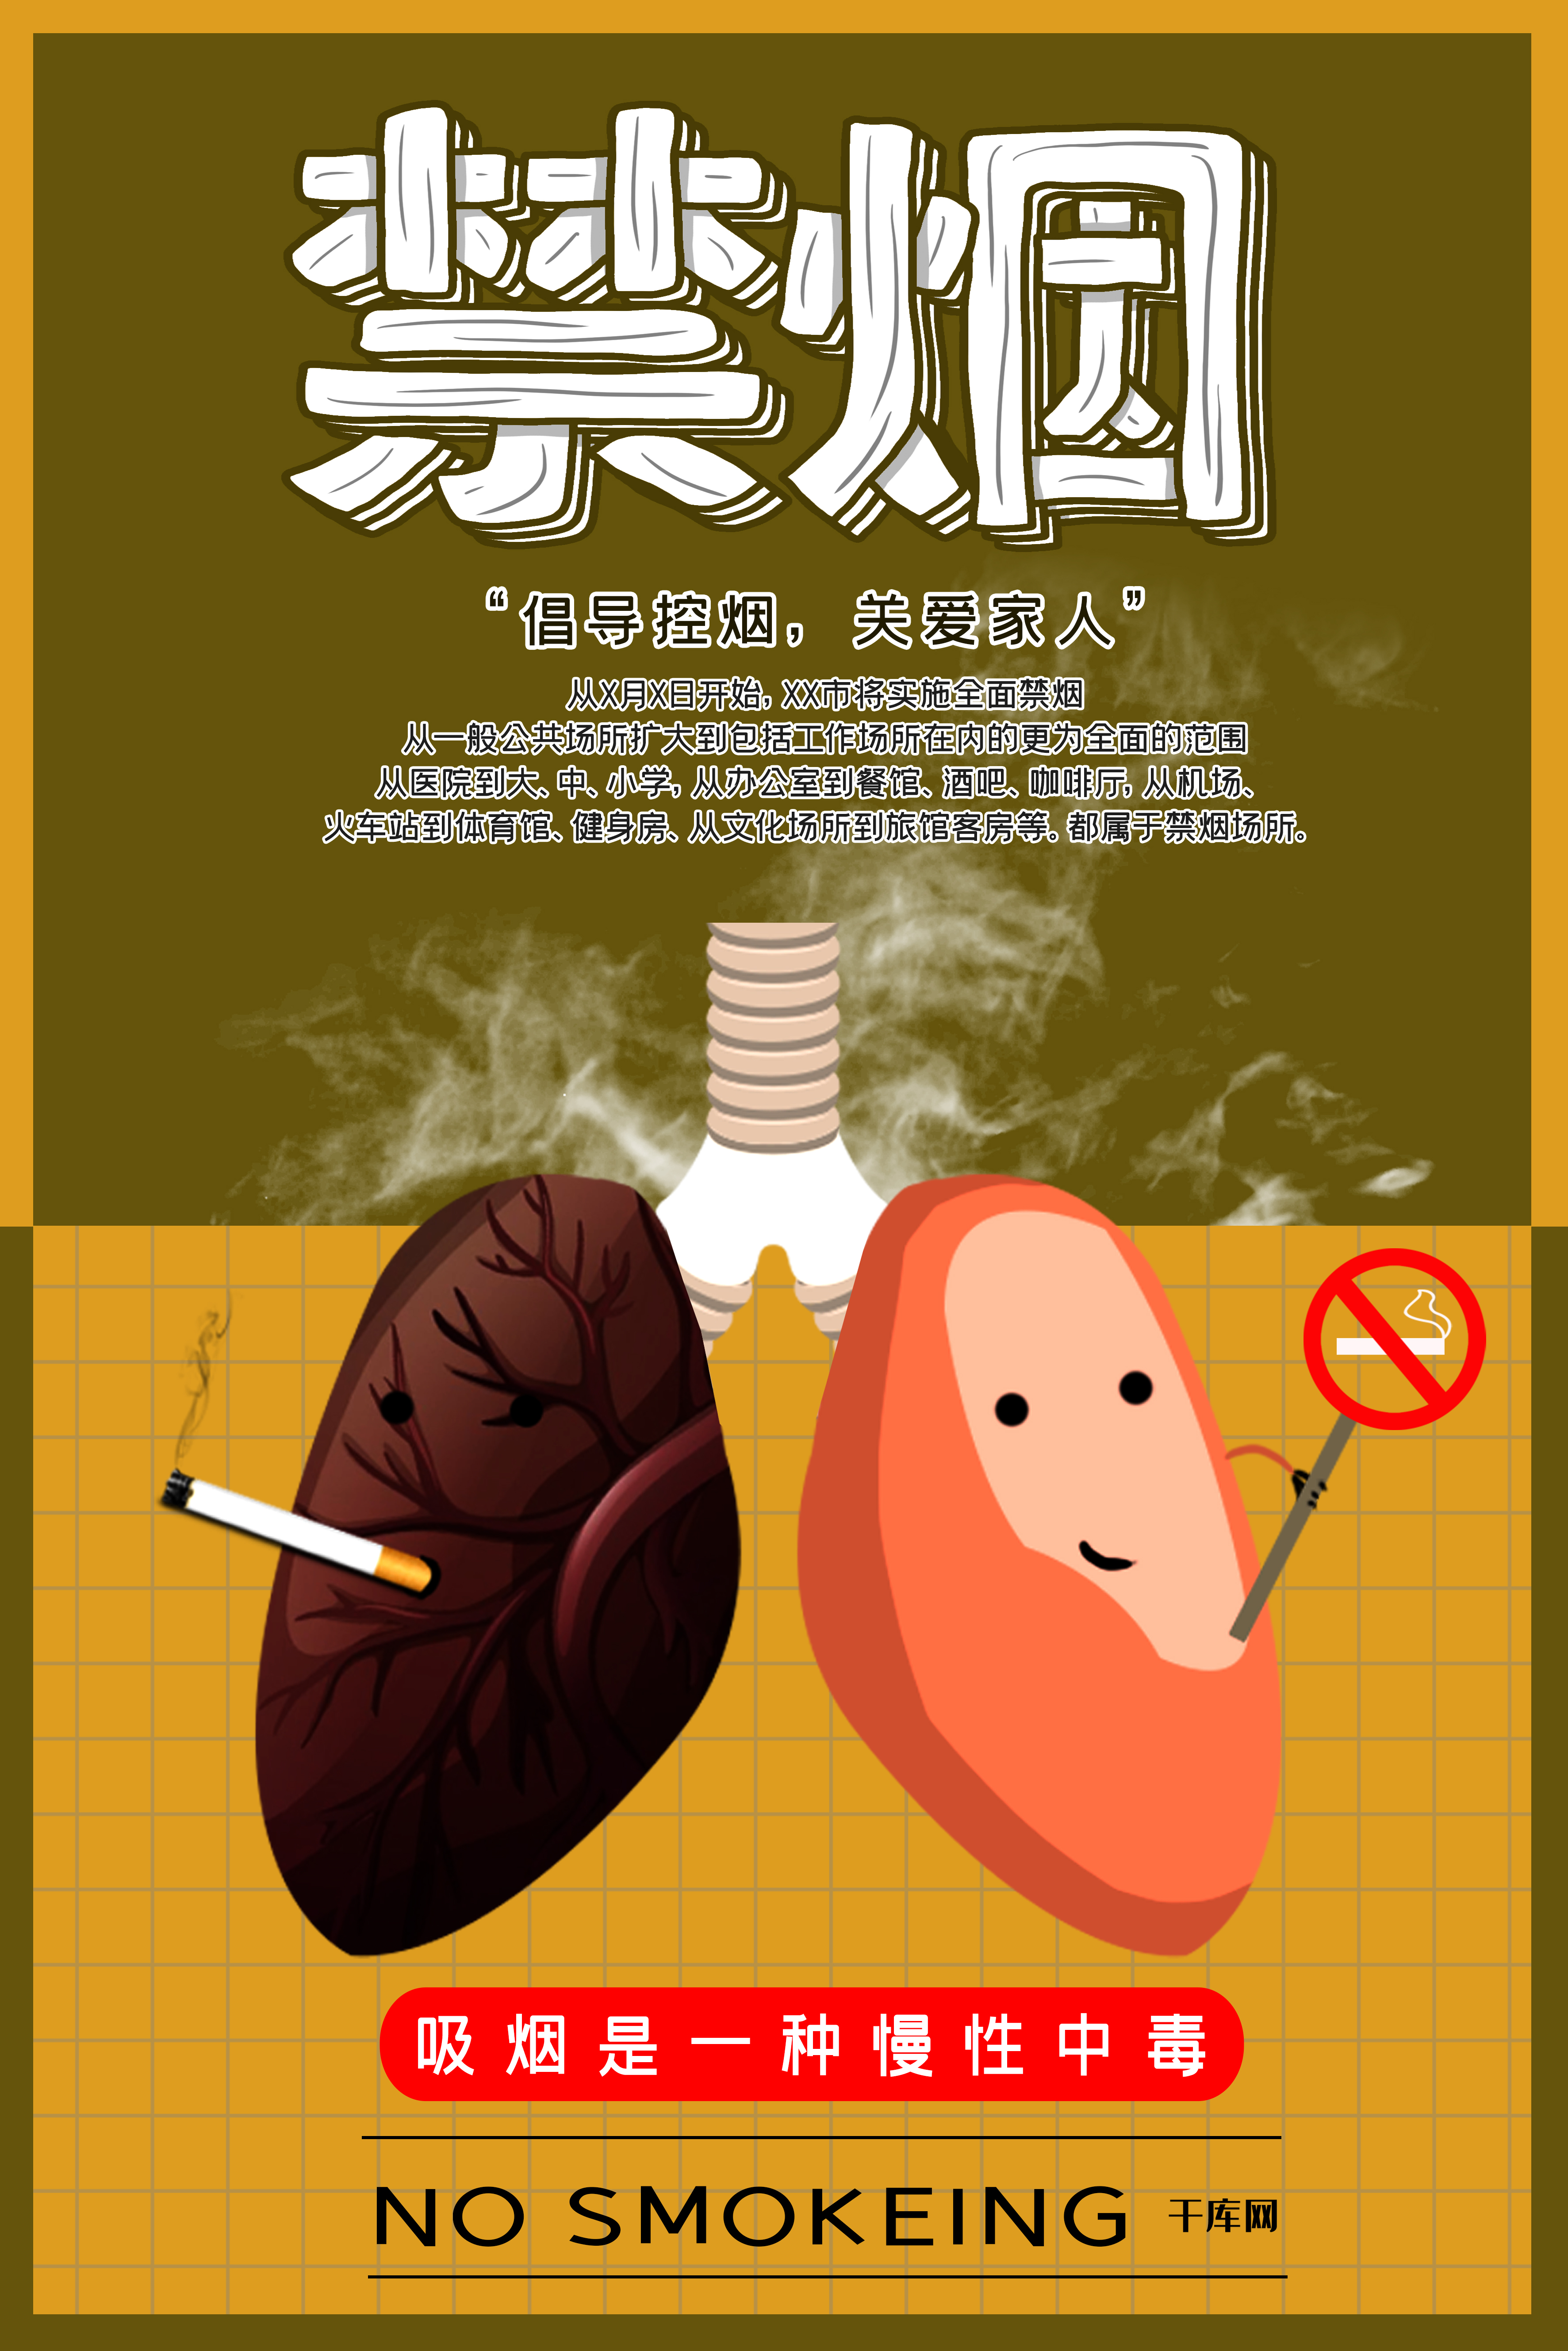 禁烟吸烟有害健康戒烟拒绝烟草控烟海报图片